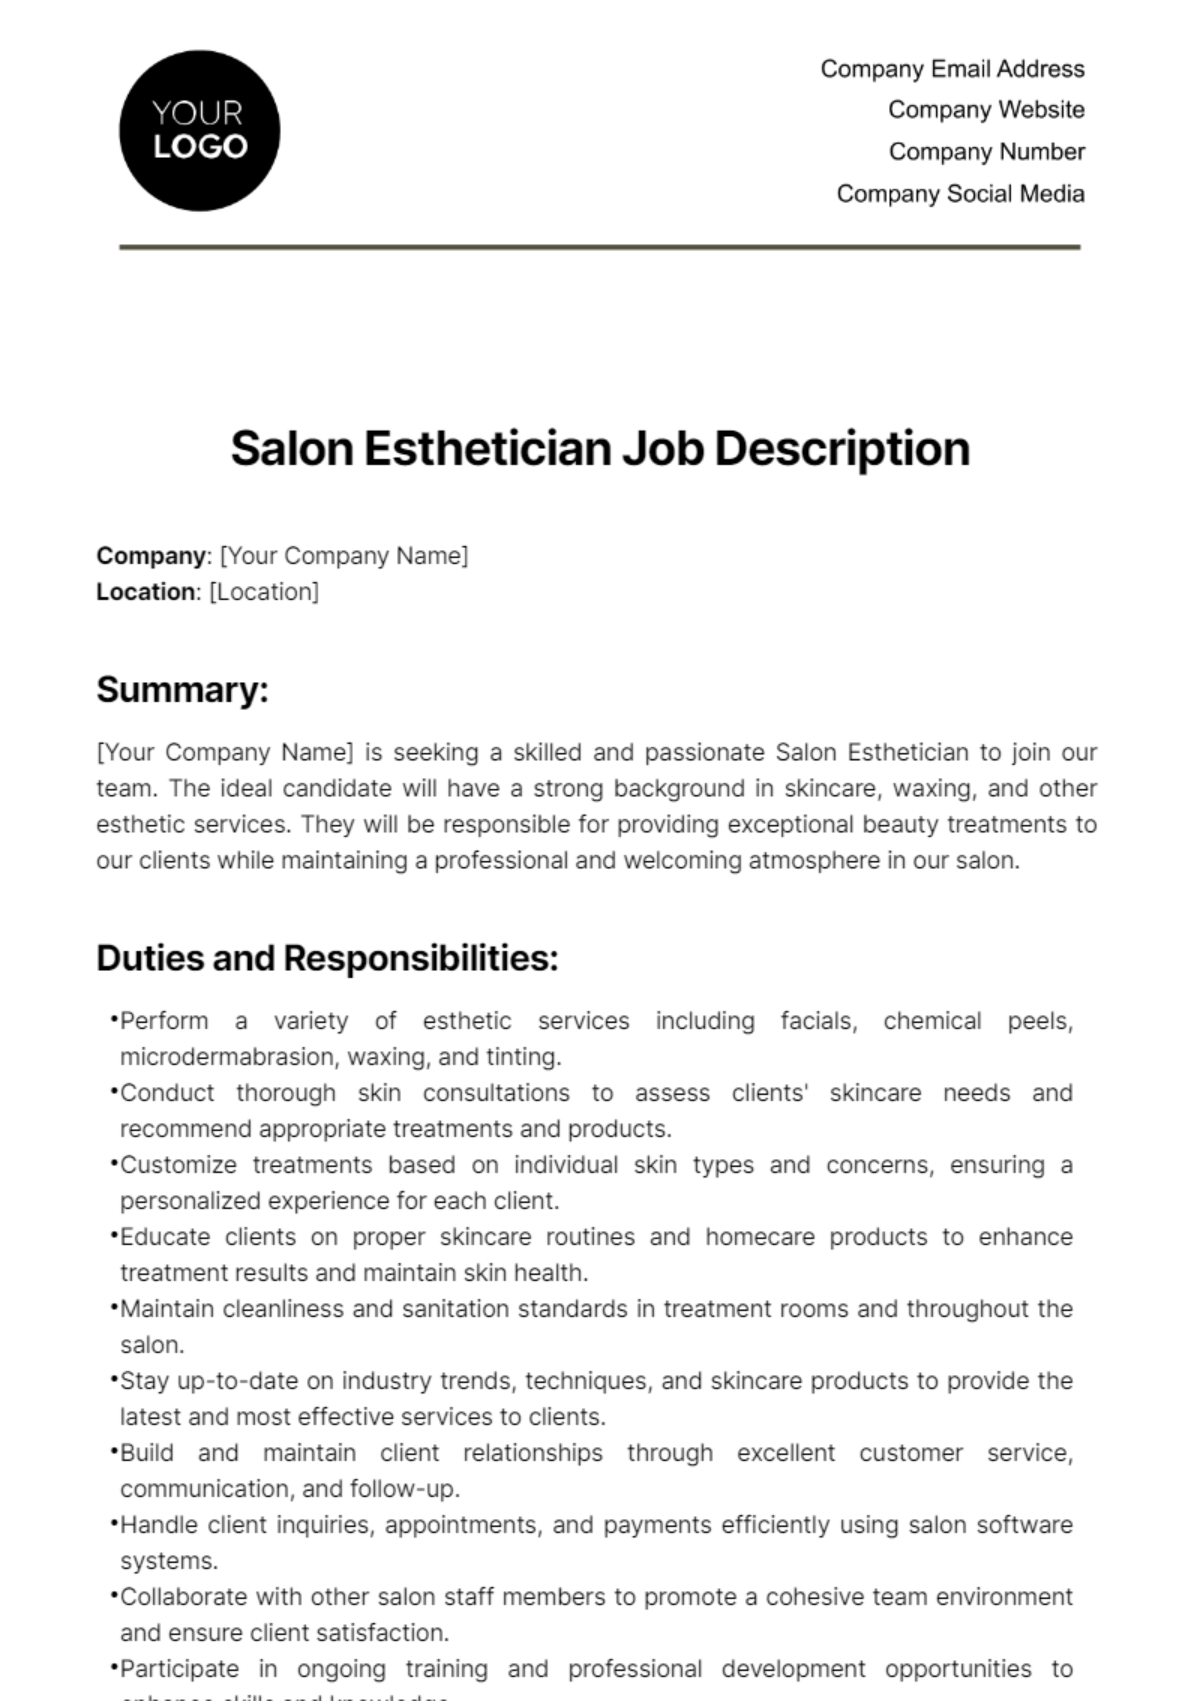 Free Salon Esthetician Job Description Template